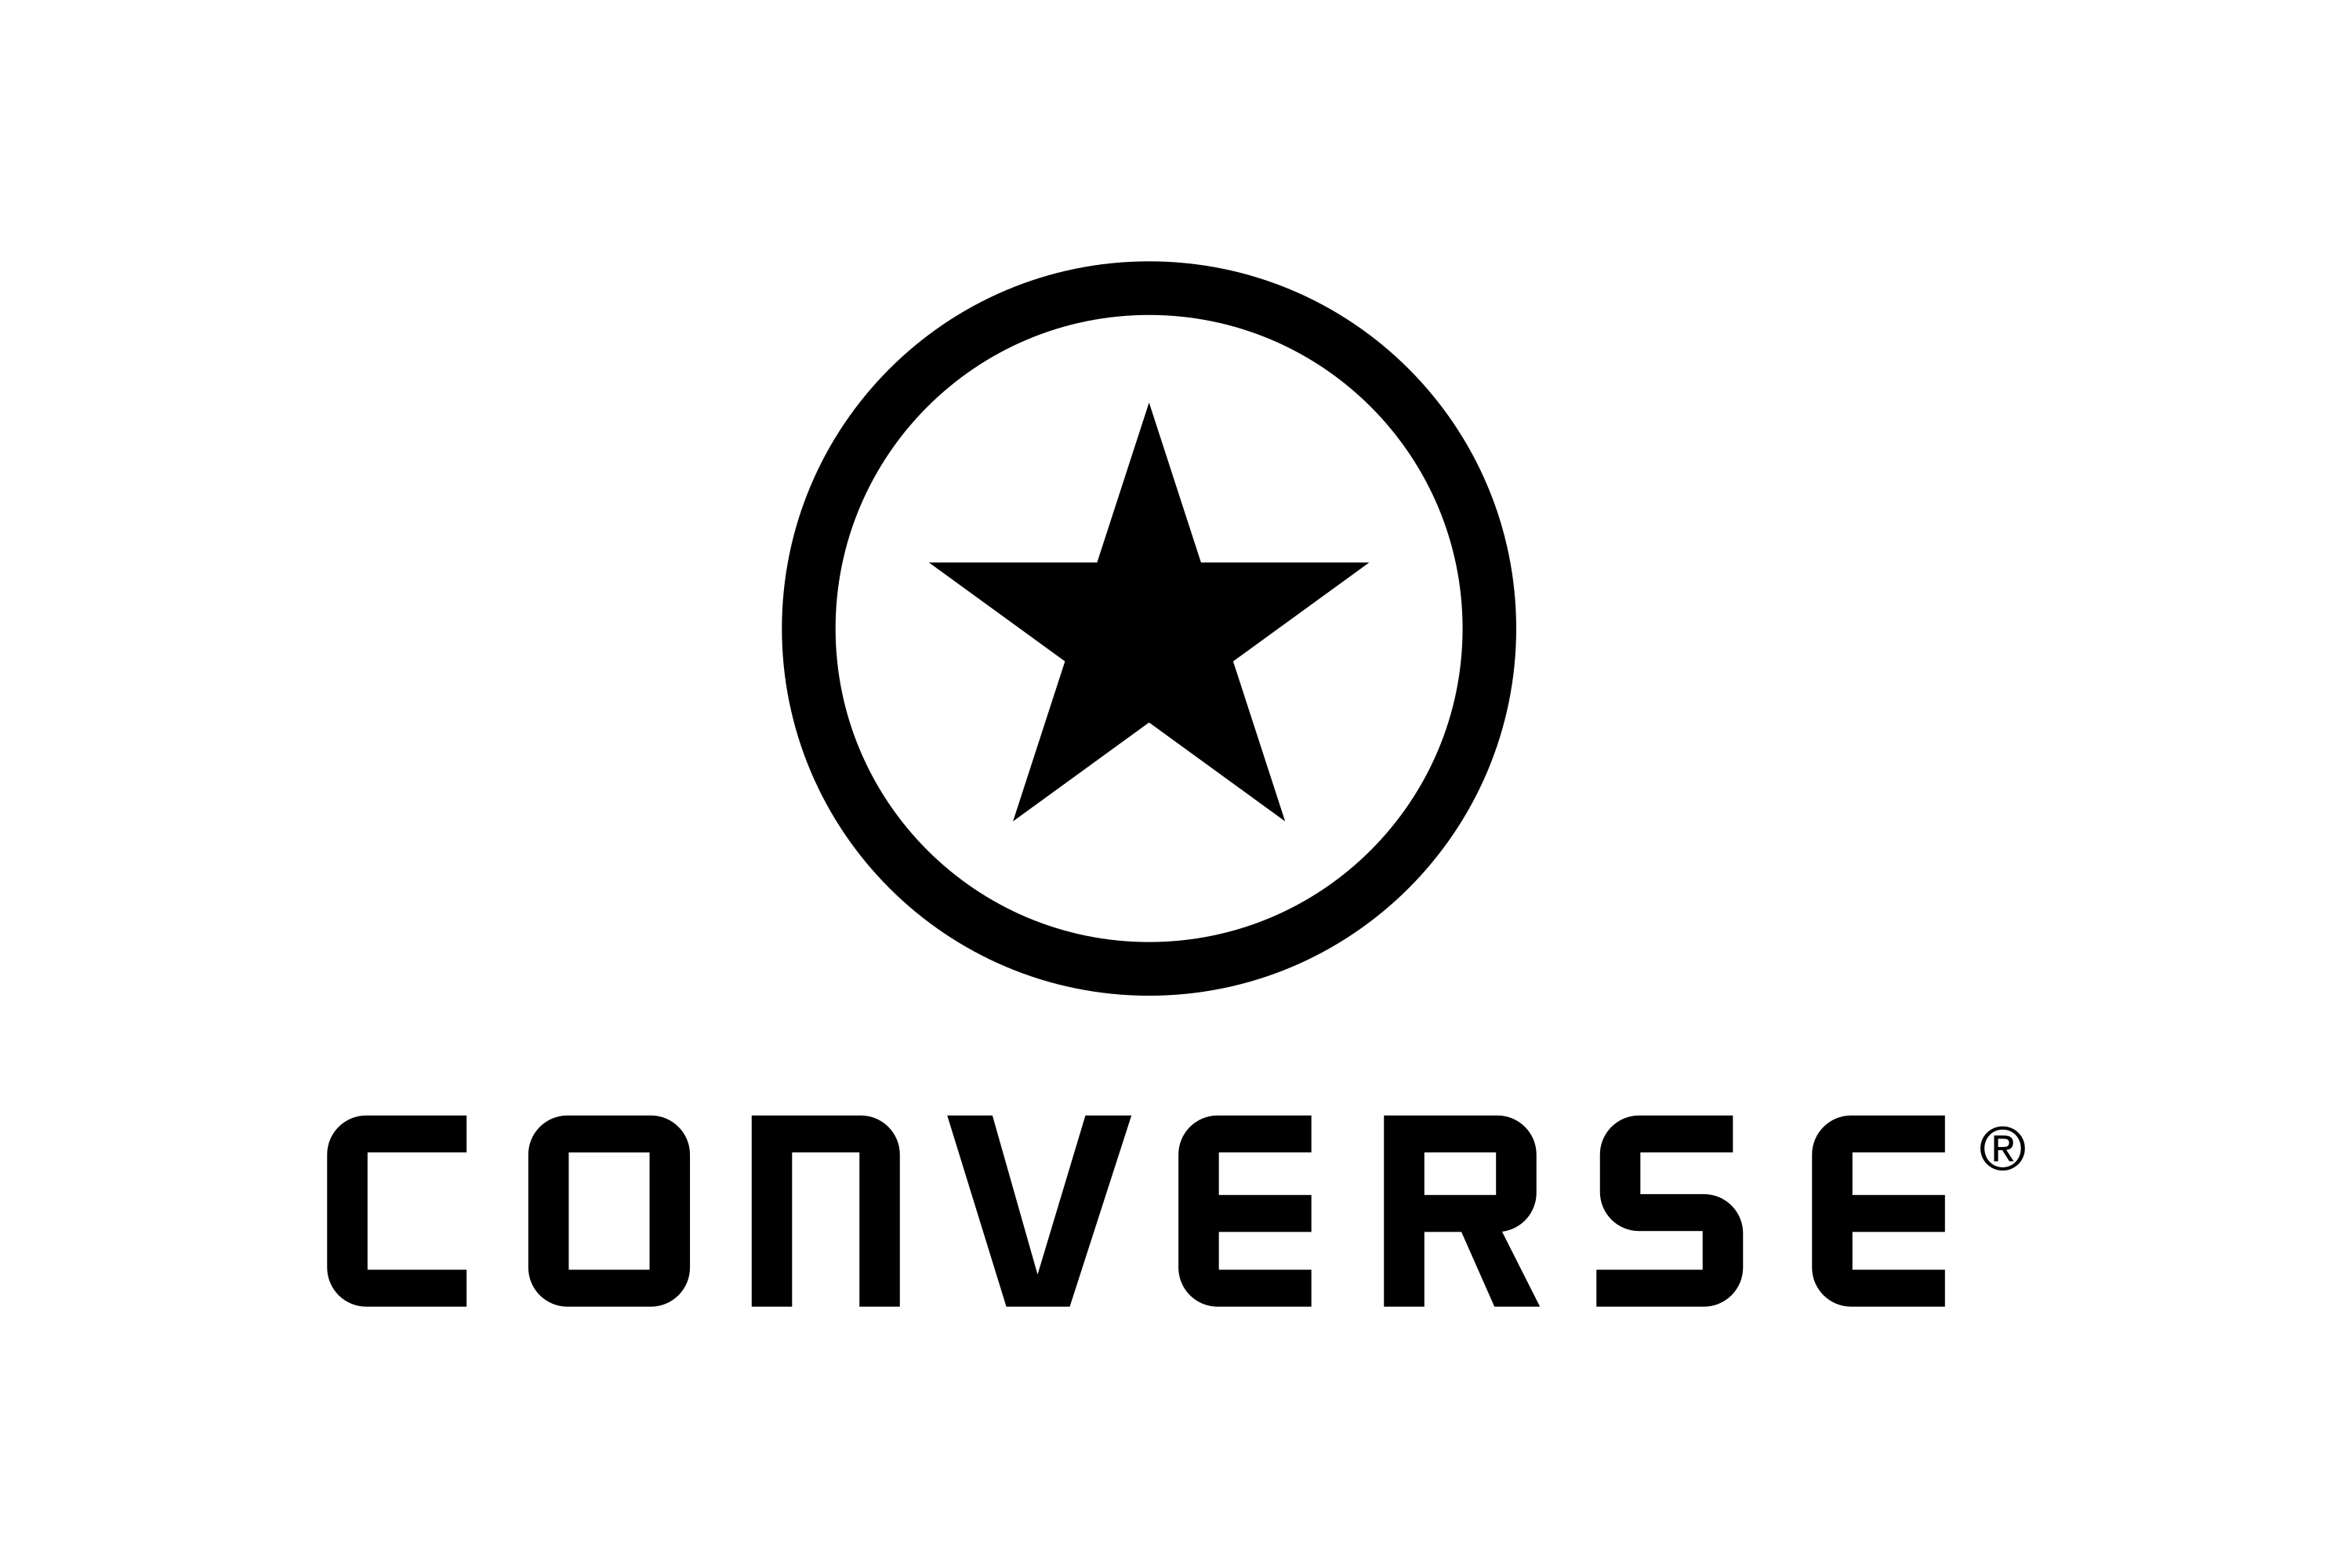 Forbedre Støv Arne Download Converse Logo in SVG Vector or PNG File Format - Logo.wine